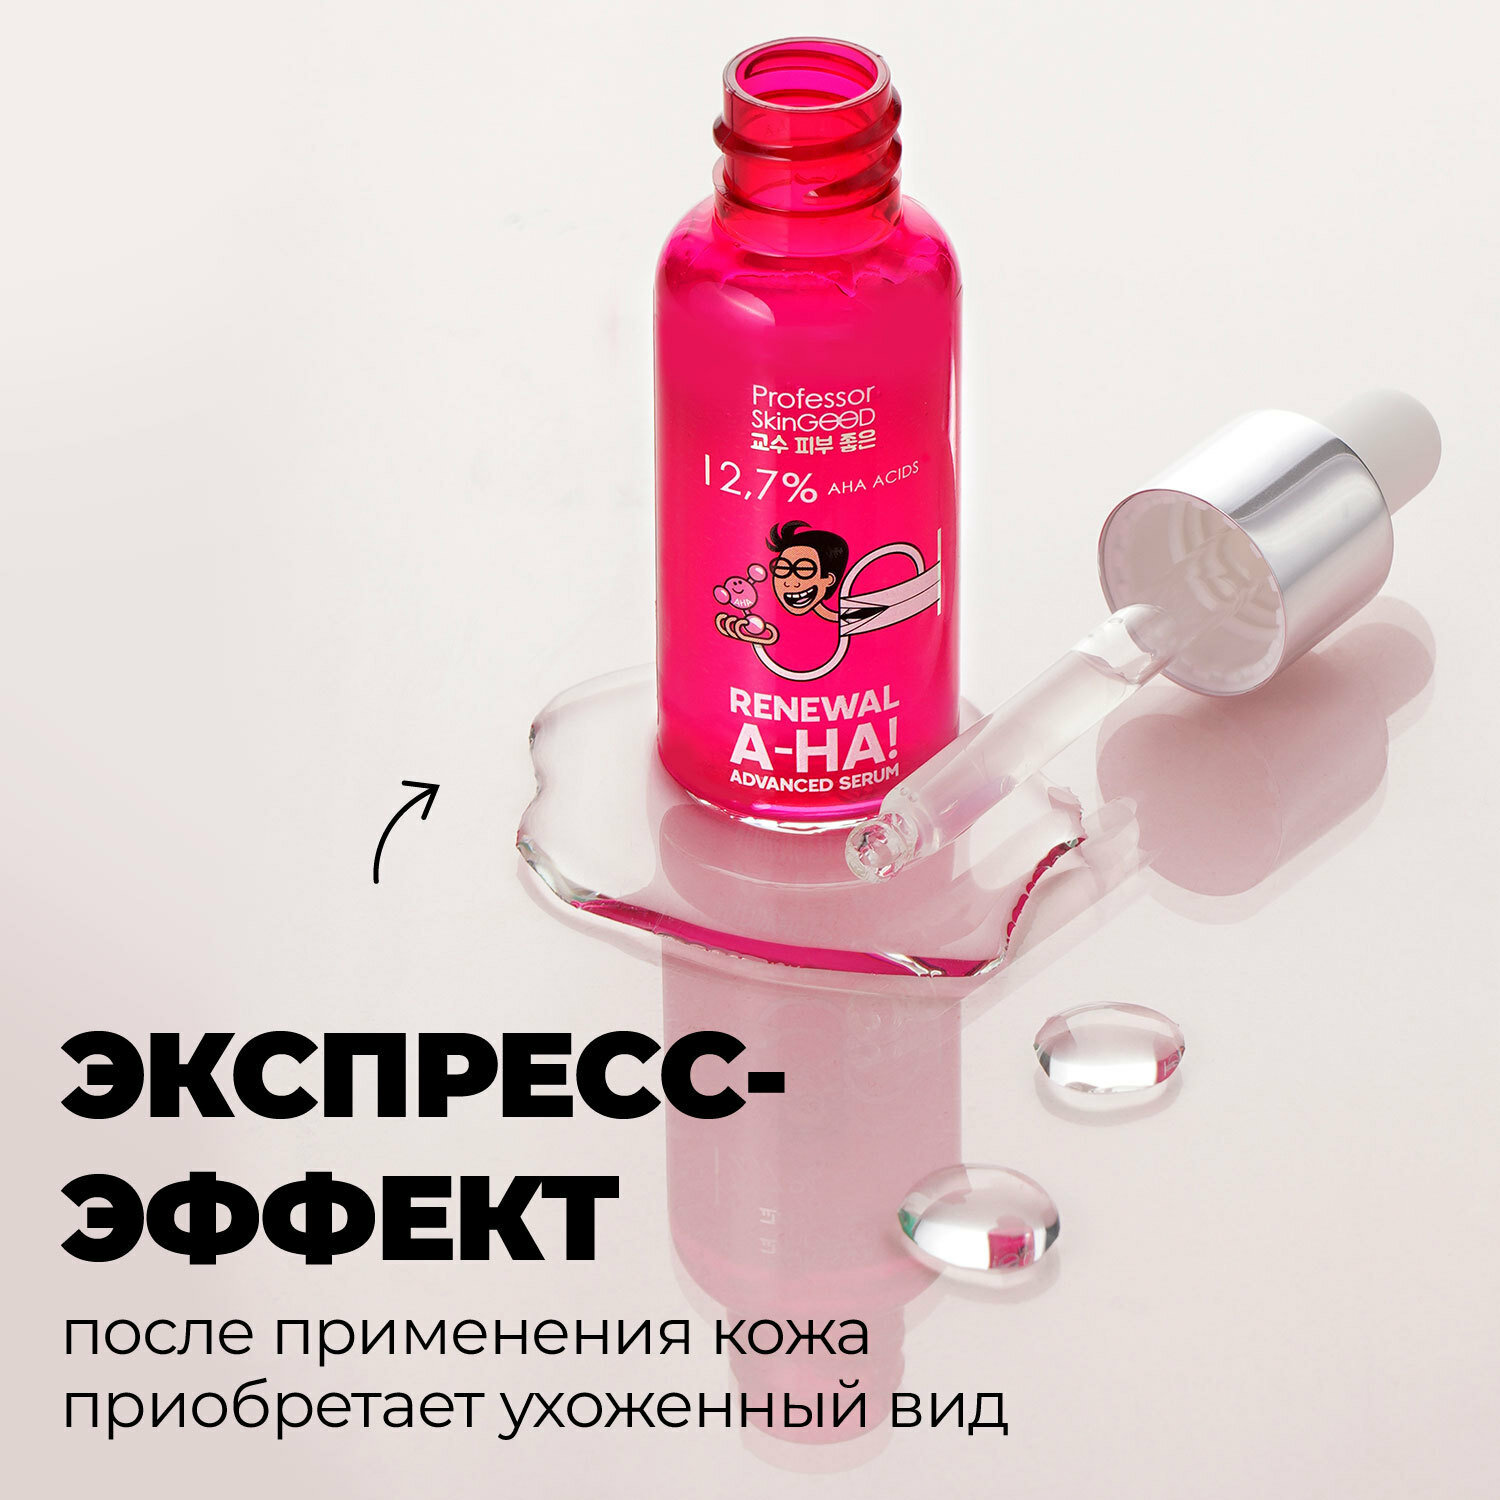 Professor SkinGOOD Сыворотка для лица с фруктовыми кислотами 30 мл / A-HA! Renewal Advanced Serum 30 ml